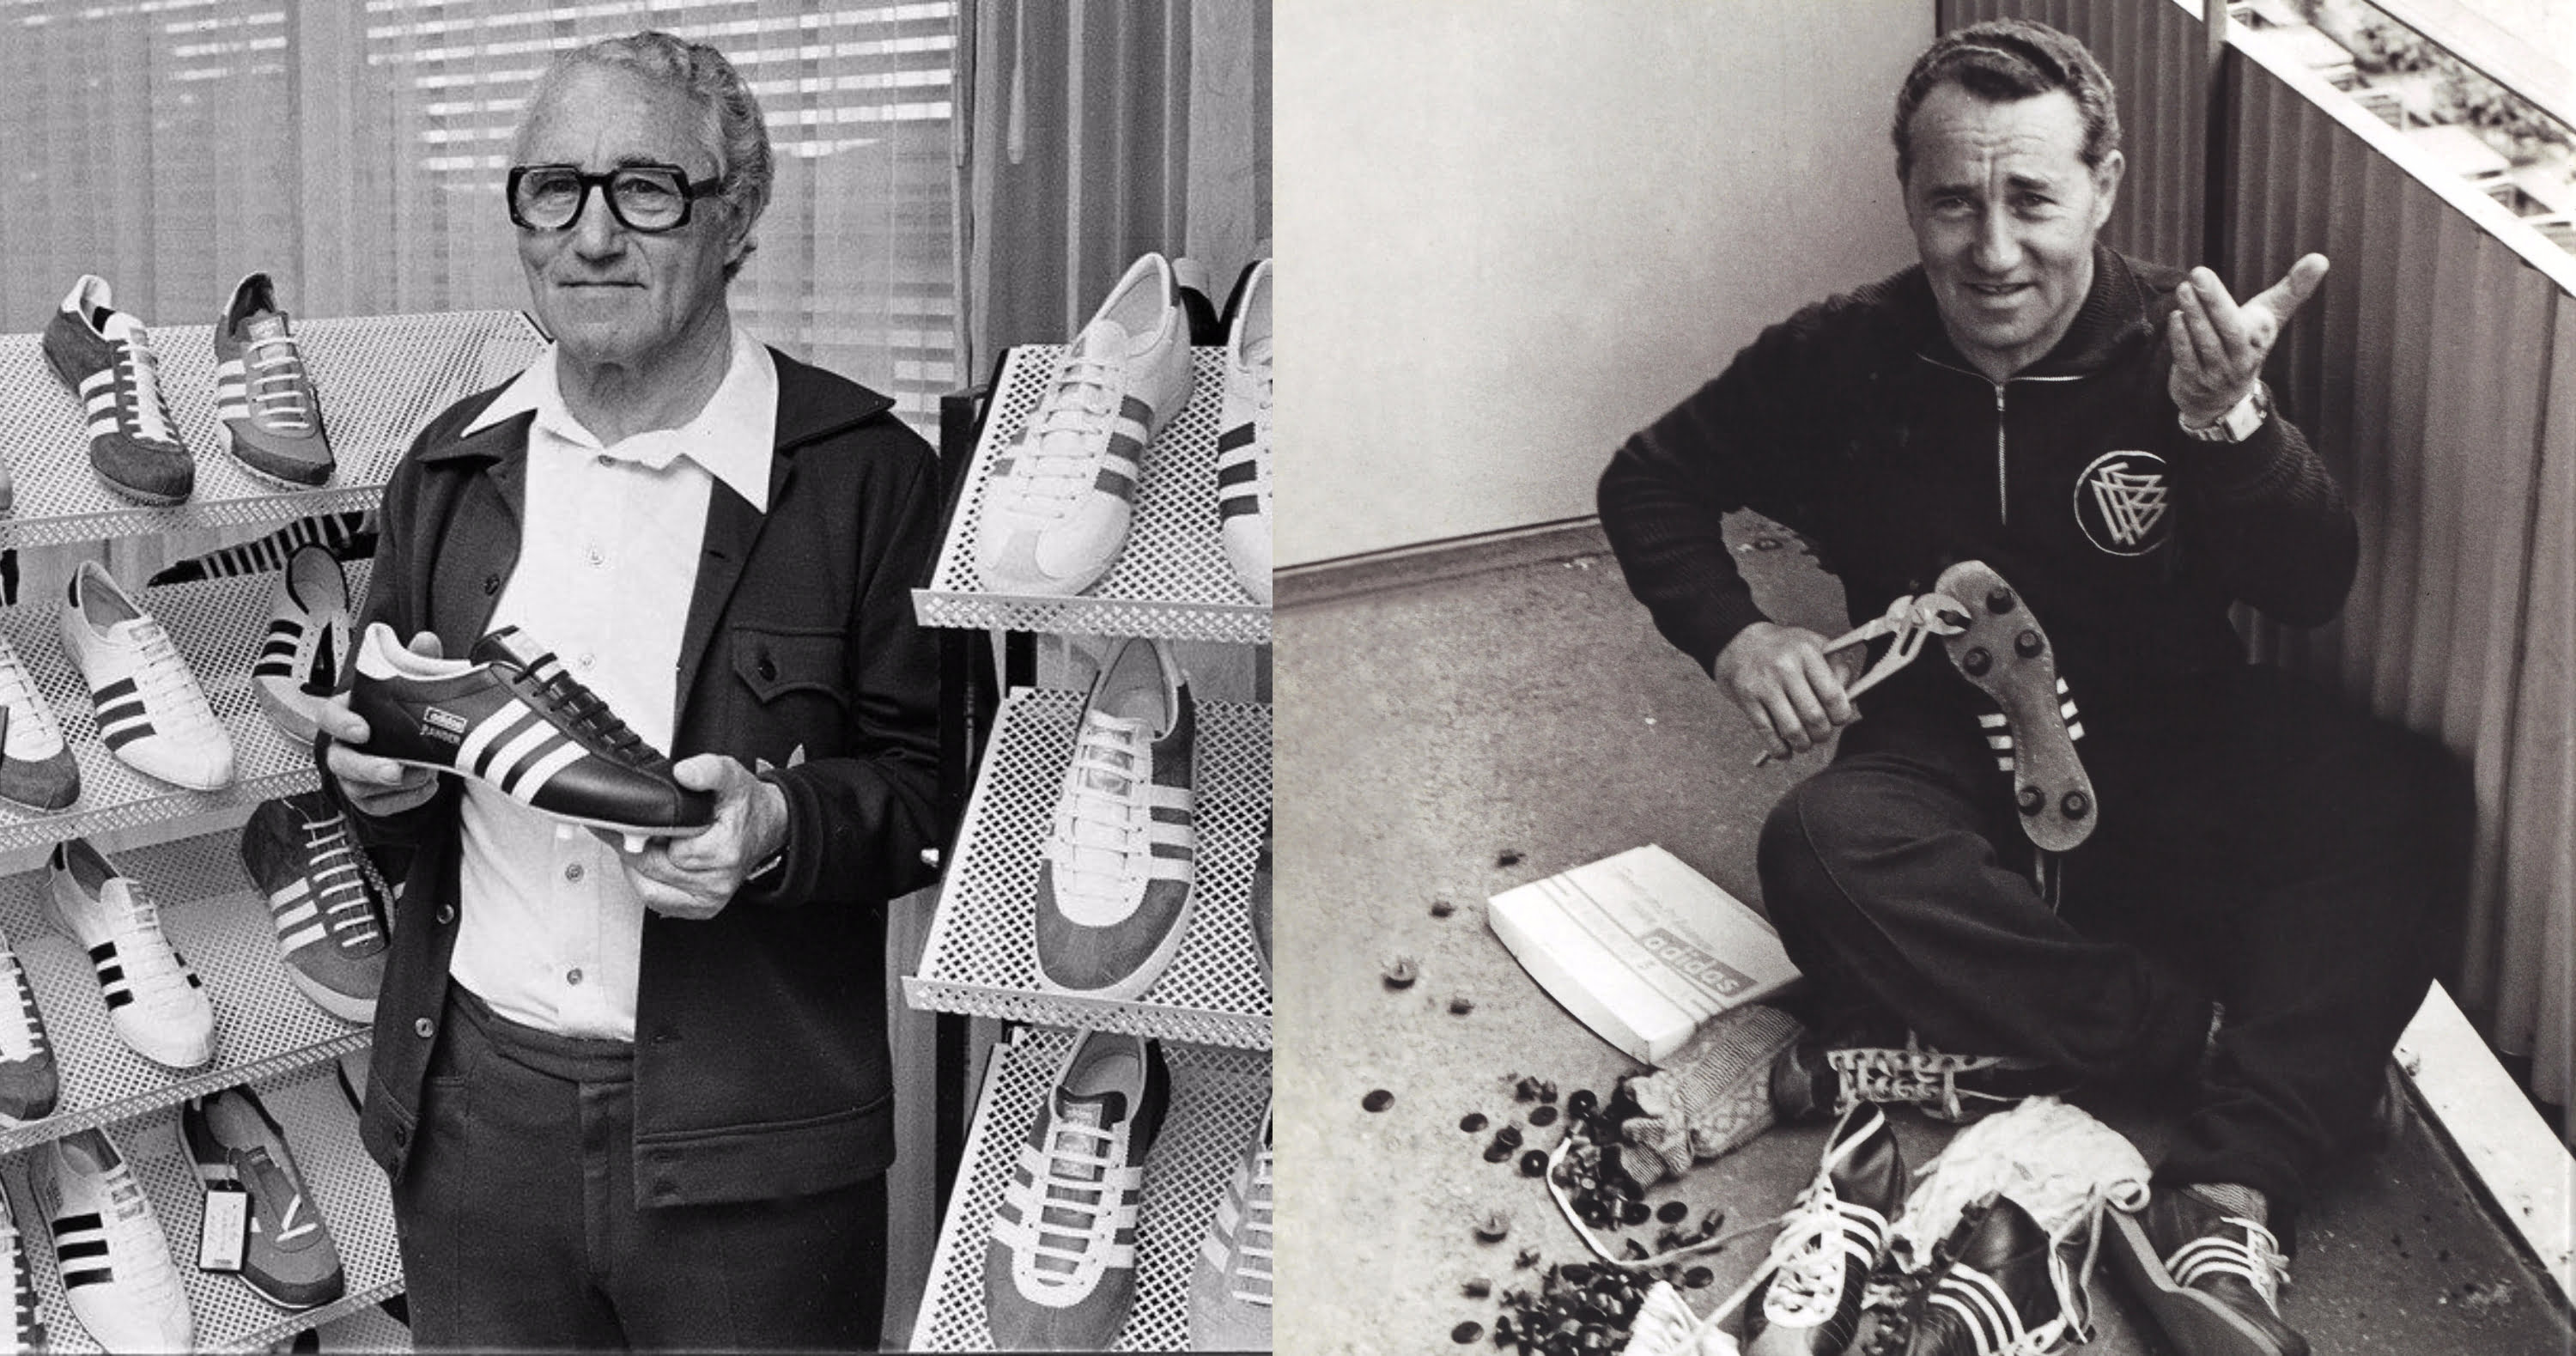 gobierno Tranquilidad de espíritu pescado Did You Know The Makers Of Adidas And Puma Are Brothers?